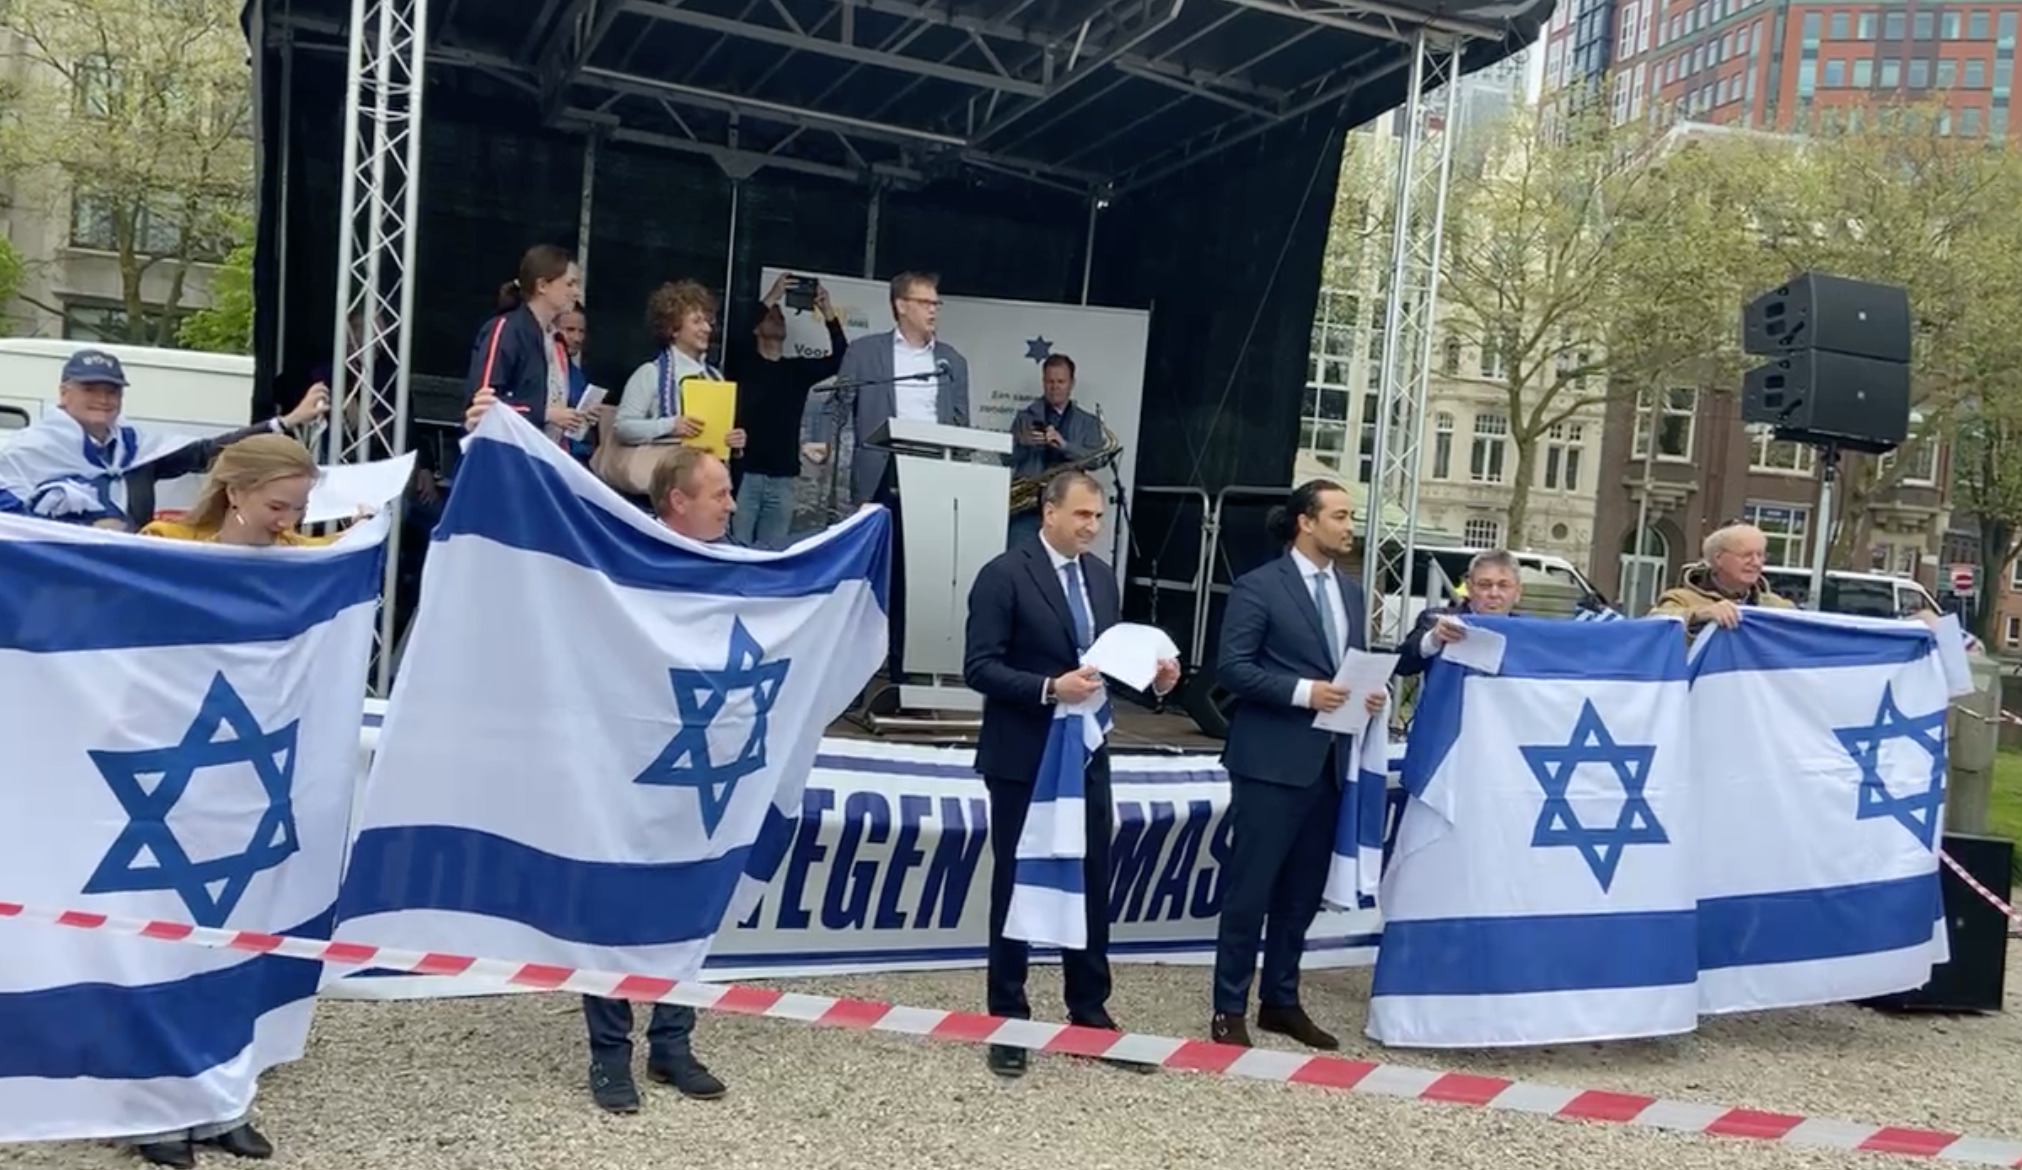 CIDI en vrienden demonstreren in Den Haag tegen Hamas, VVD en CDA ontbreken